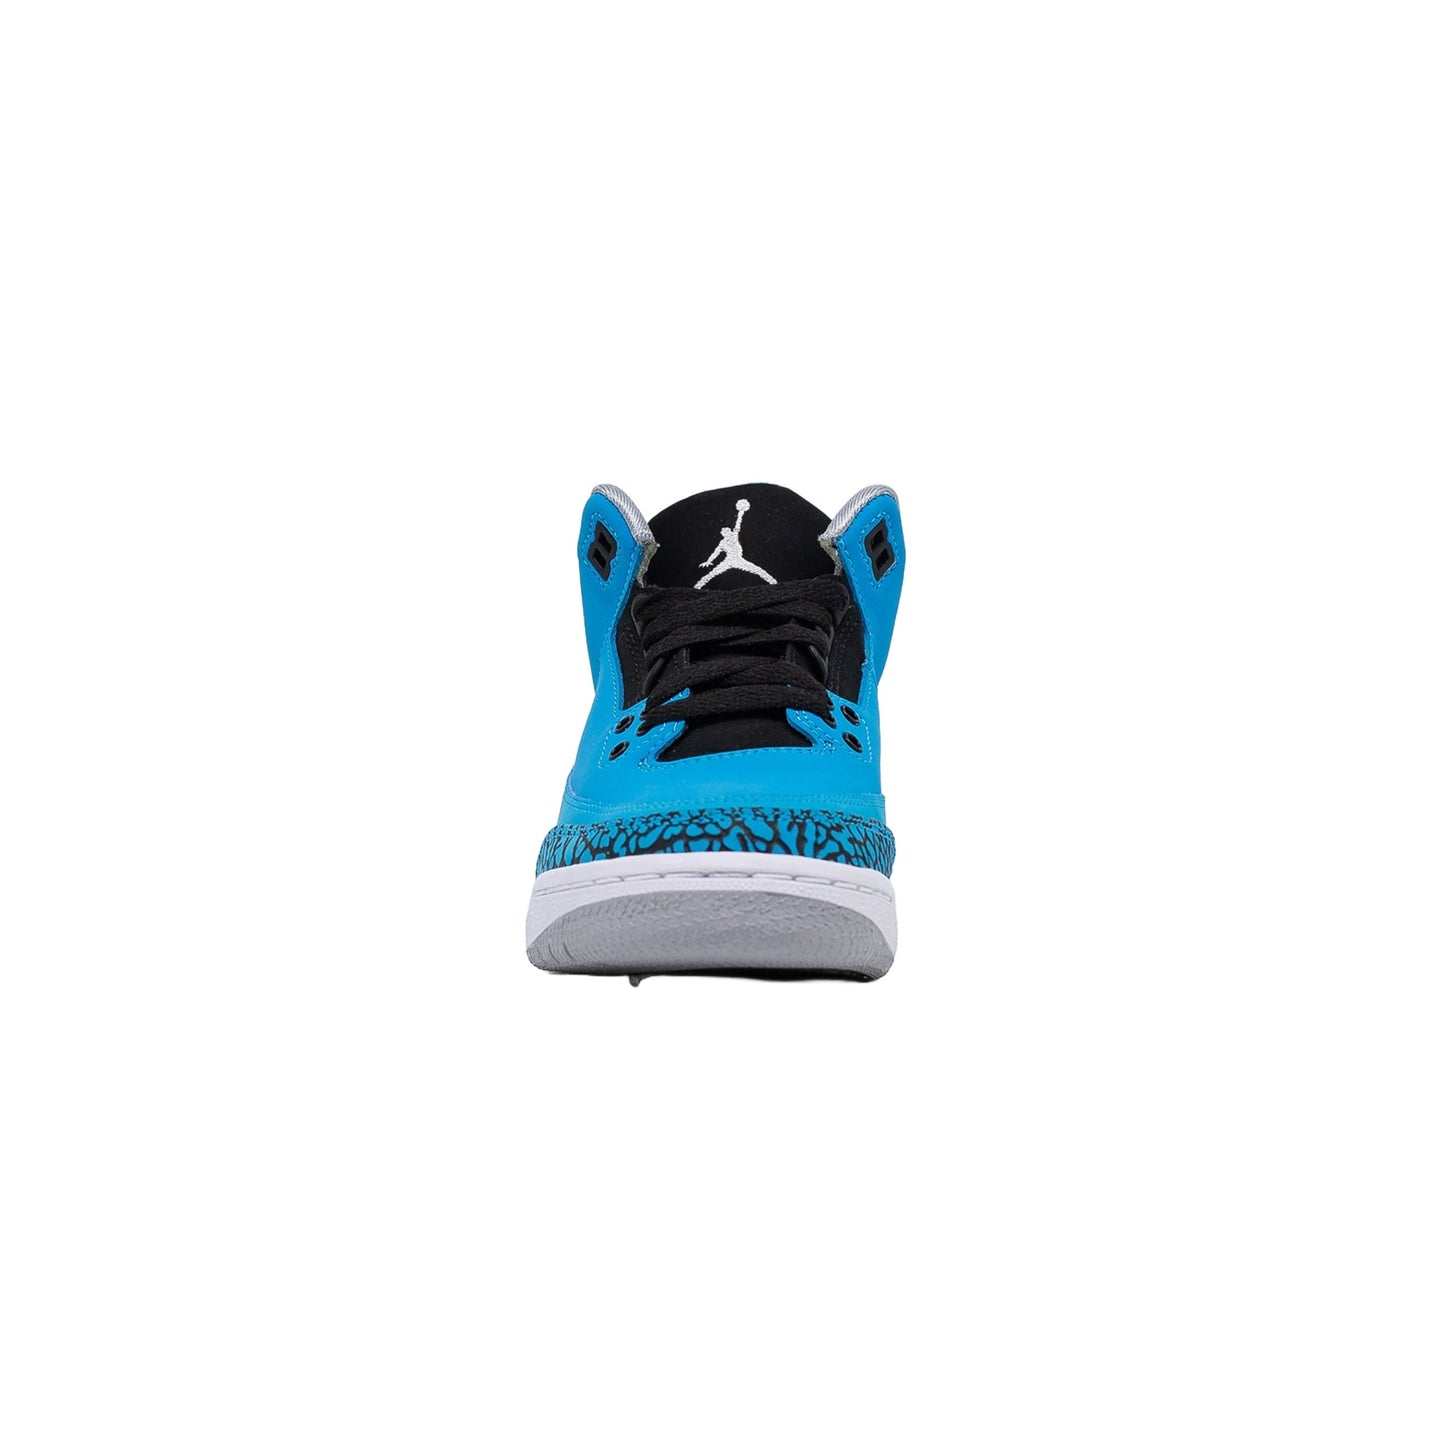 Air Jordan 3 (GS), Powder Blue